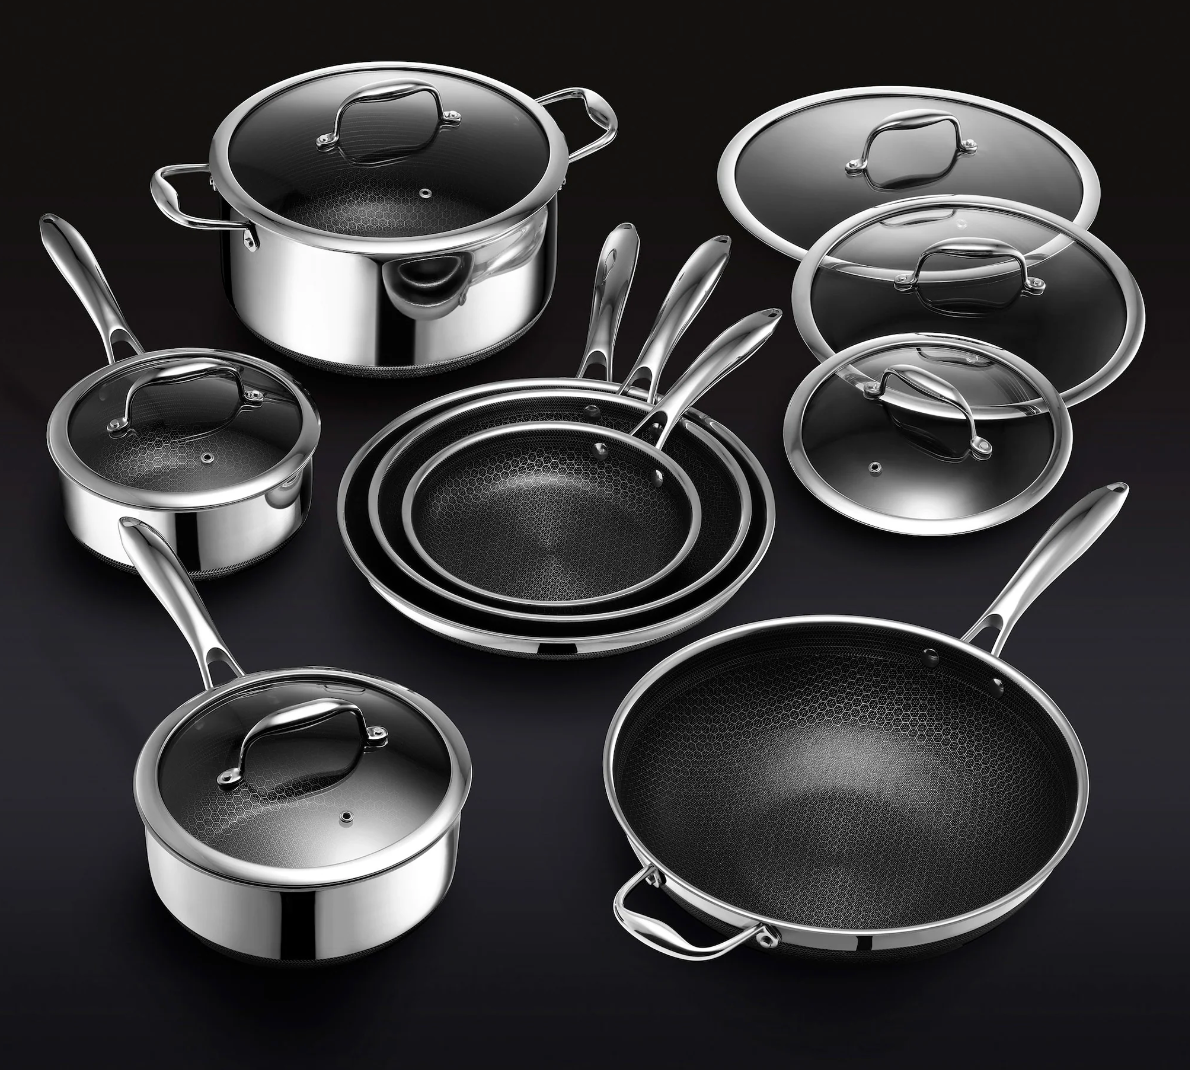 Gordon Ramsay Hexclad pan set is Goated! 🍳🥘🥩🥚 #hexclad #hexcladp